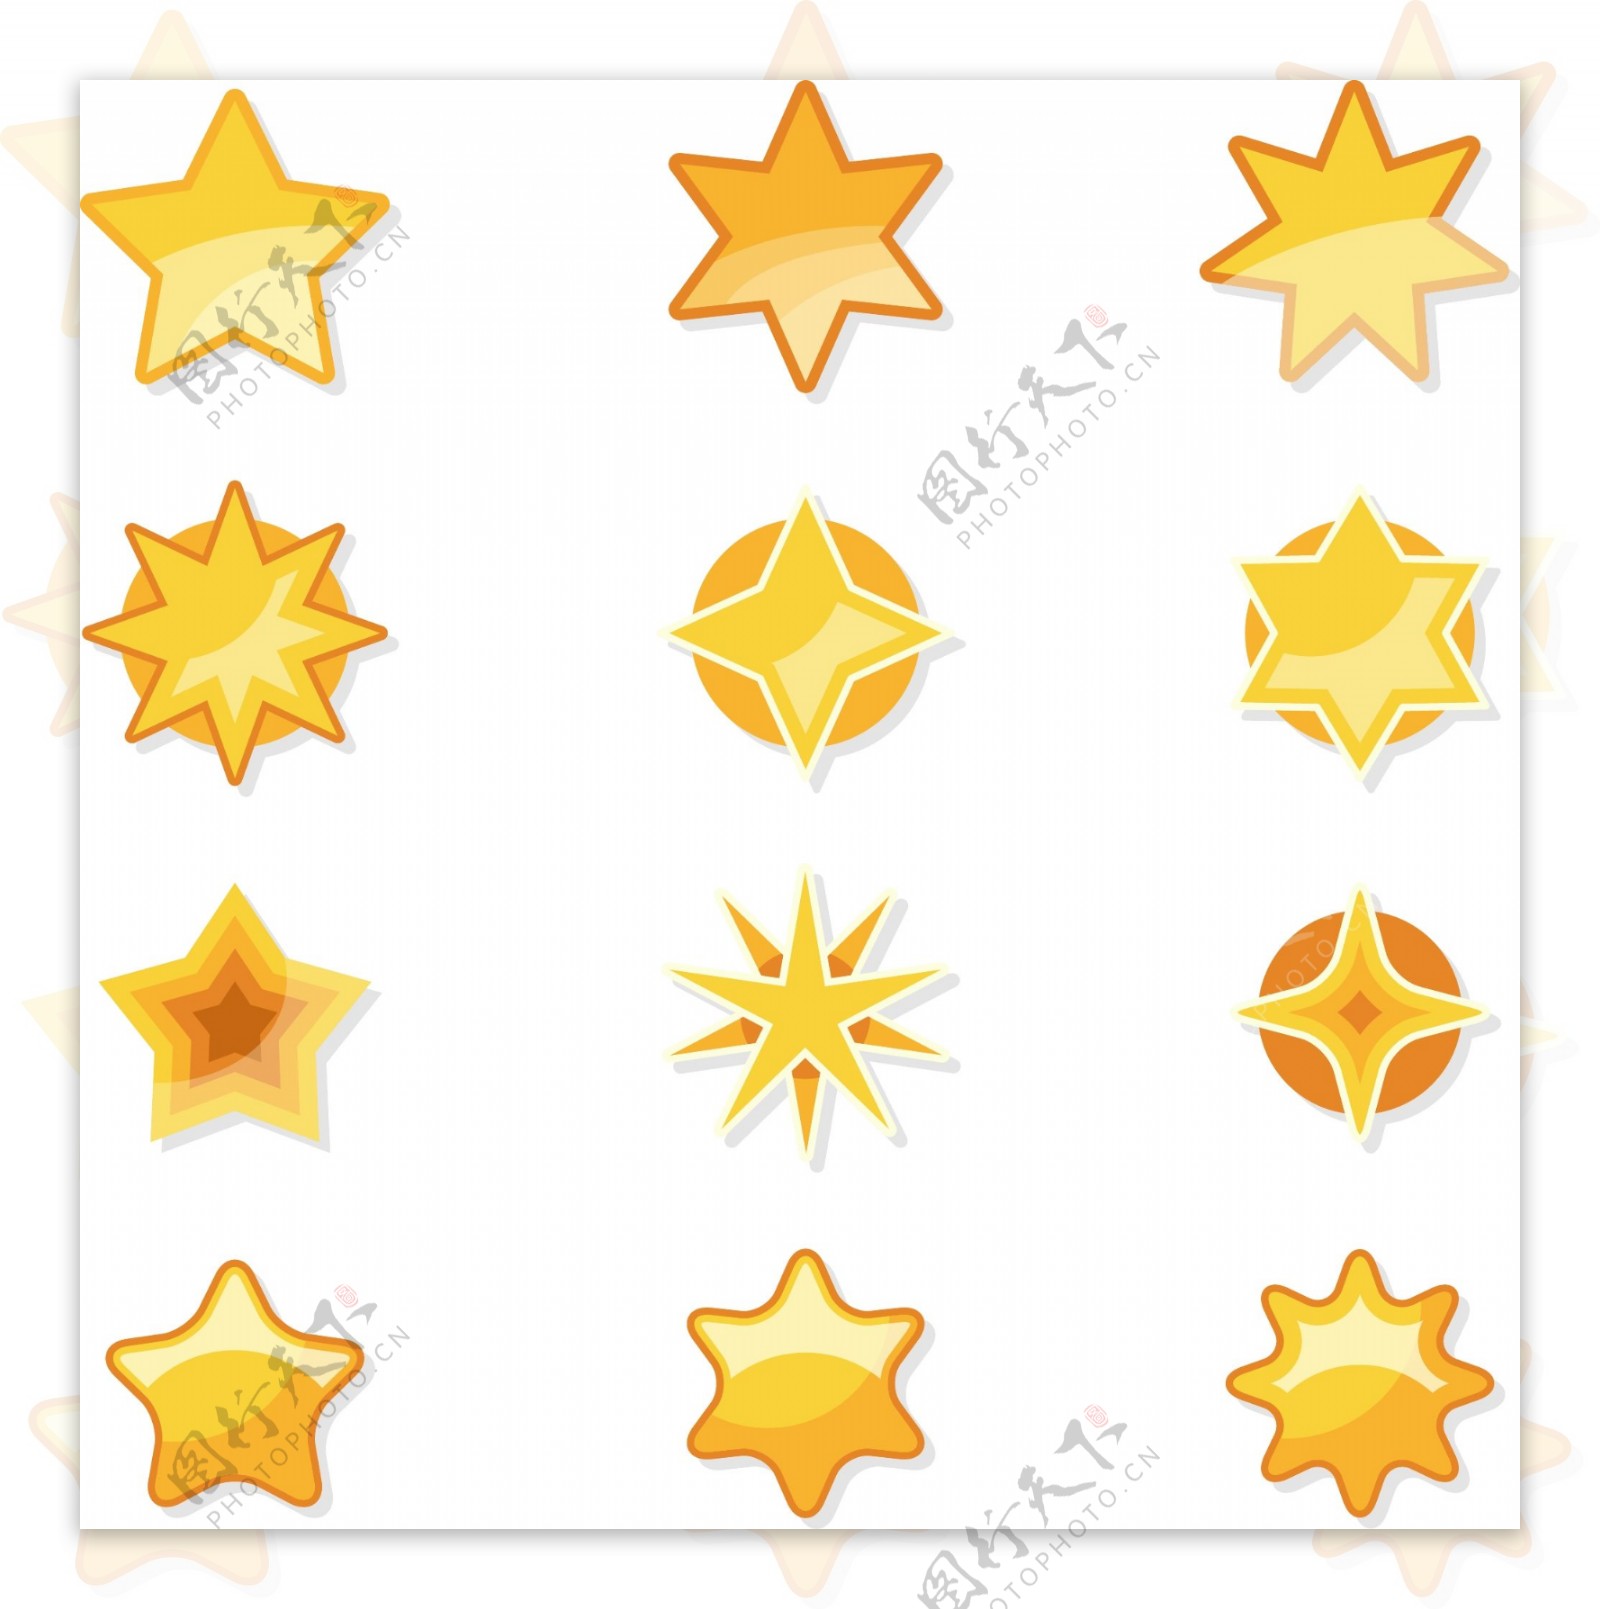 矢量金色五角星装饰元素